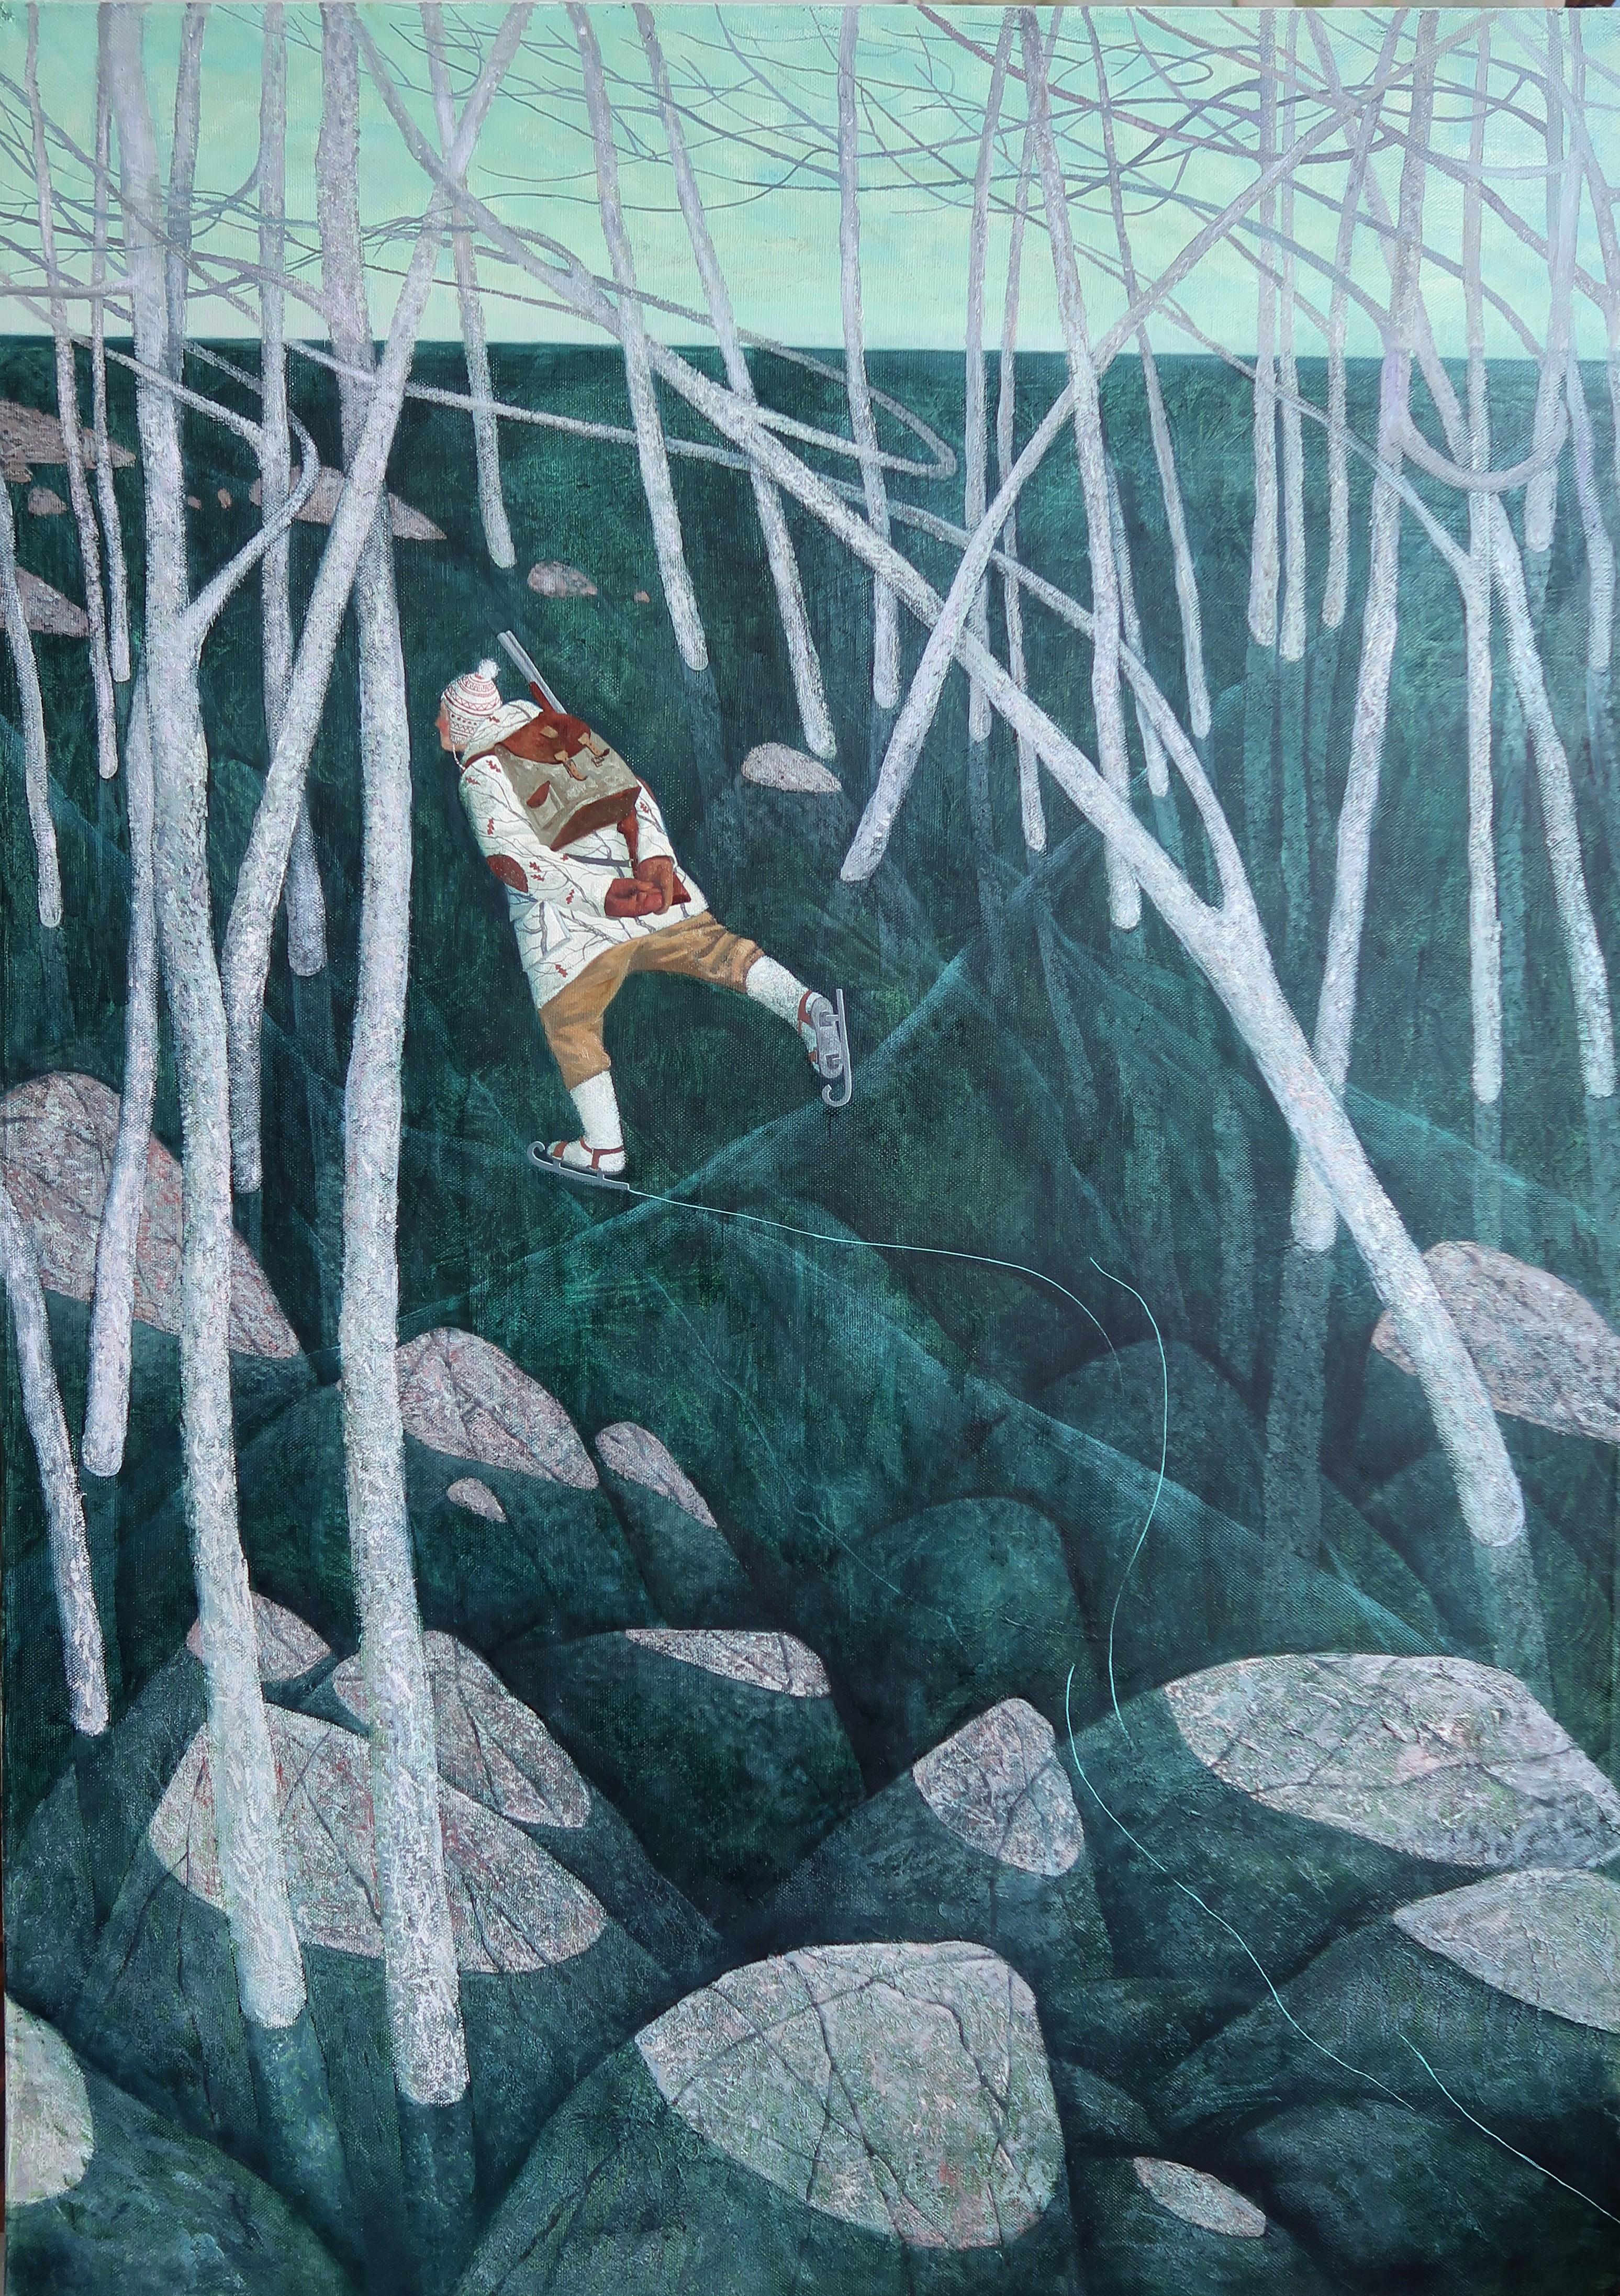 Landscape Painting Nikita Mogilevtsev - Patinage sur glace - Paysage d'hiver contemporain du 21e siècle avec patin à glace